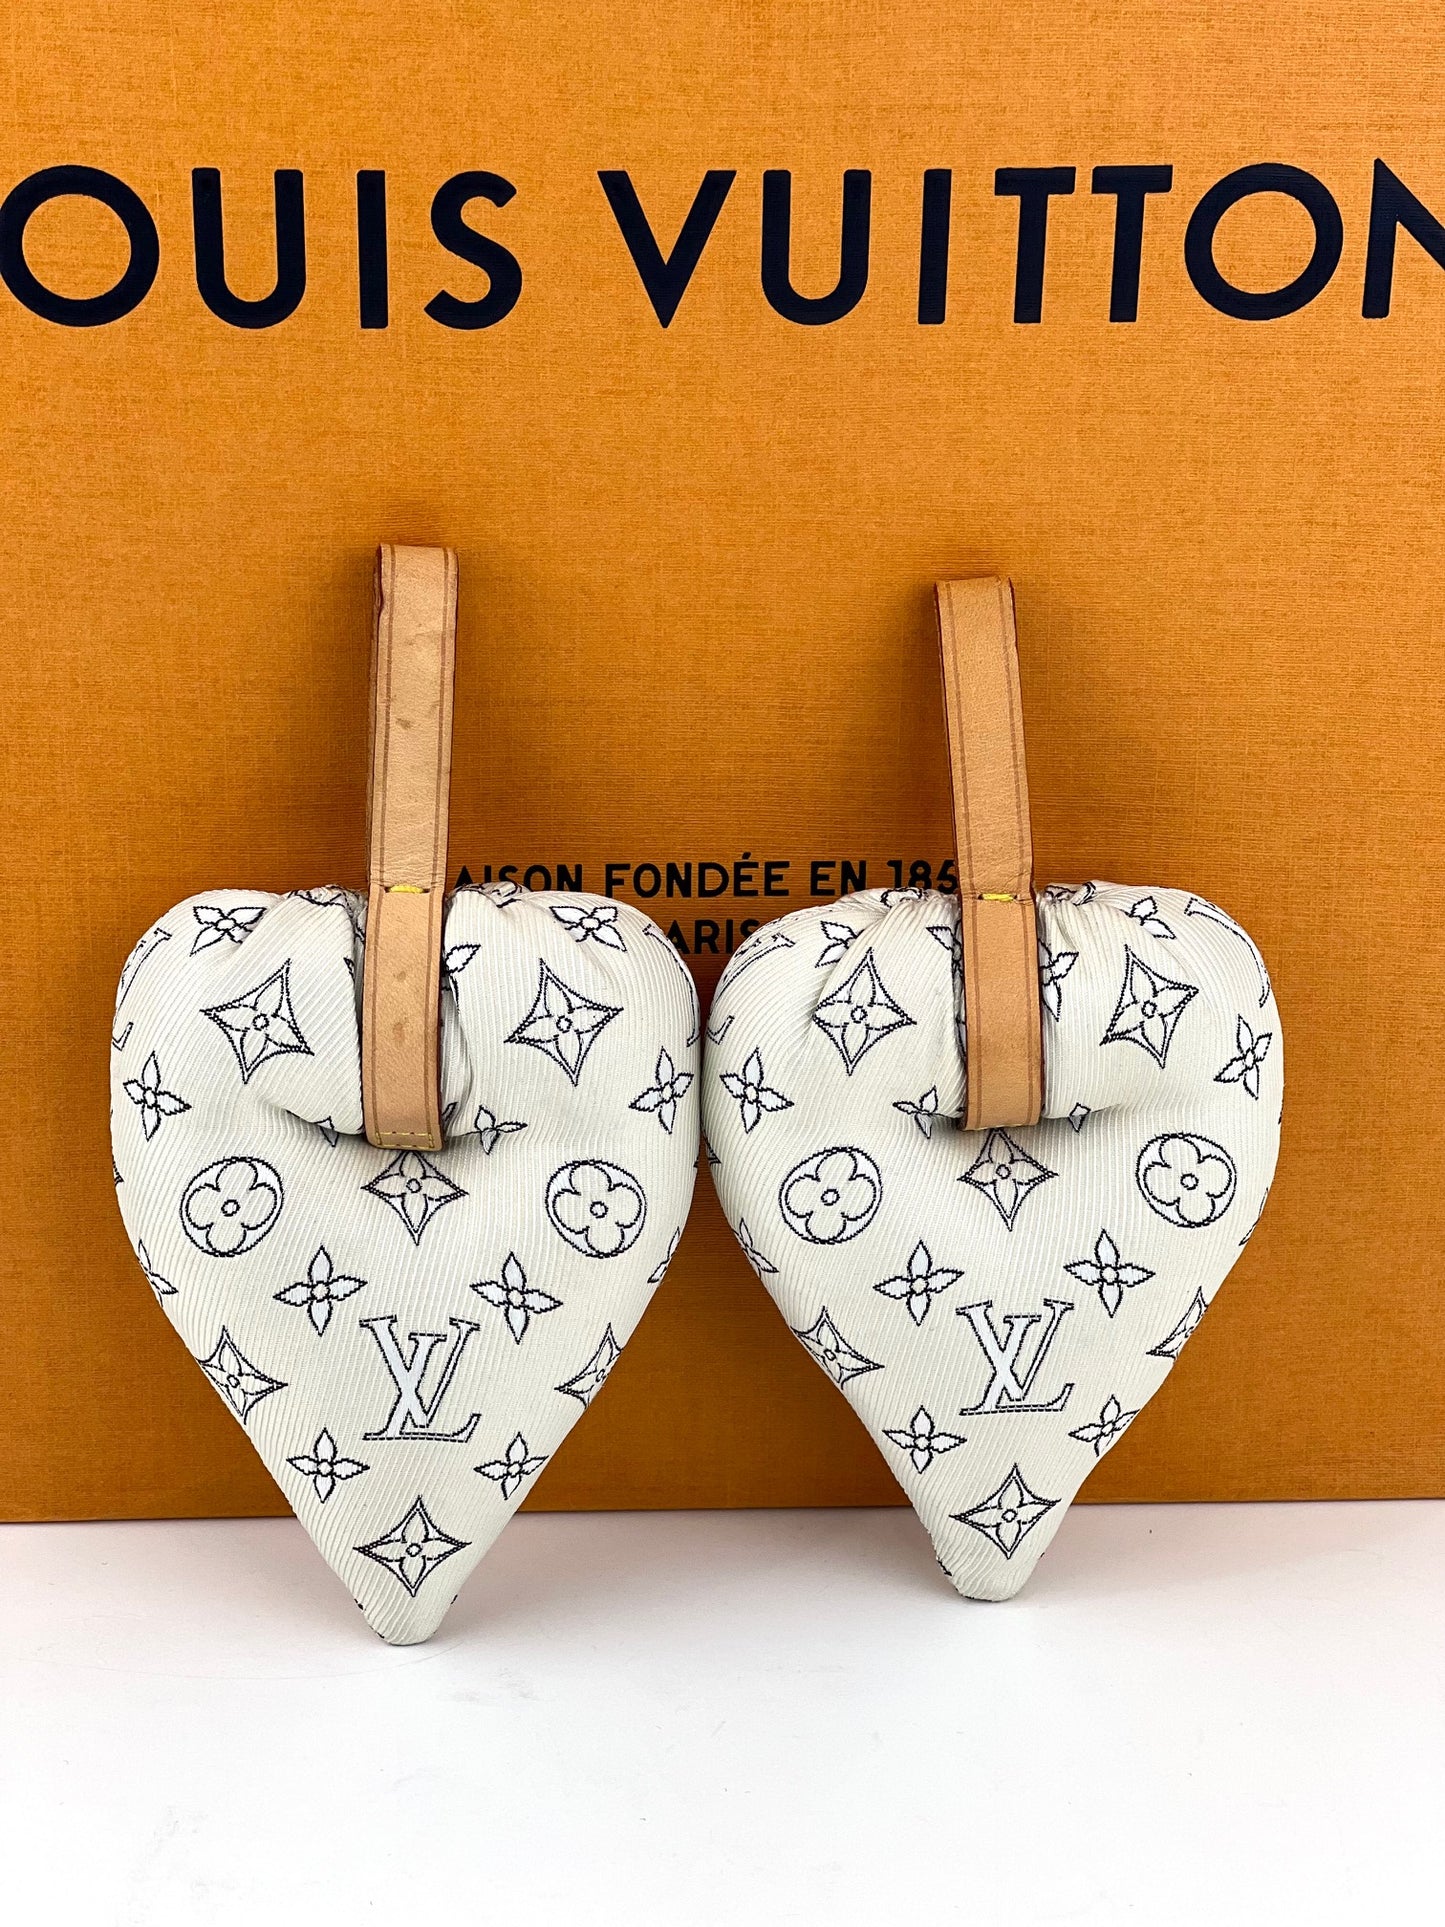 Louis Vuitton Ornament 